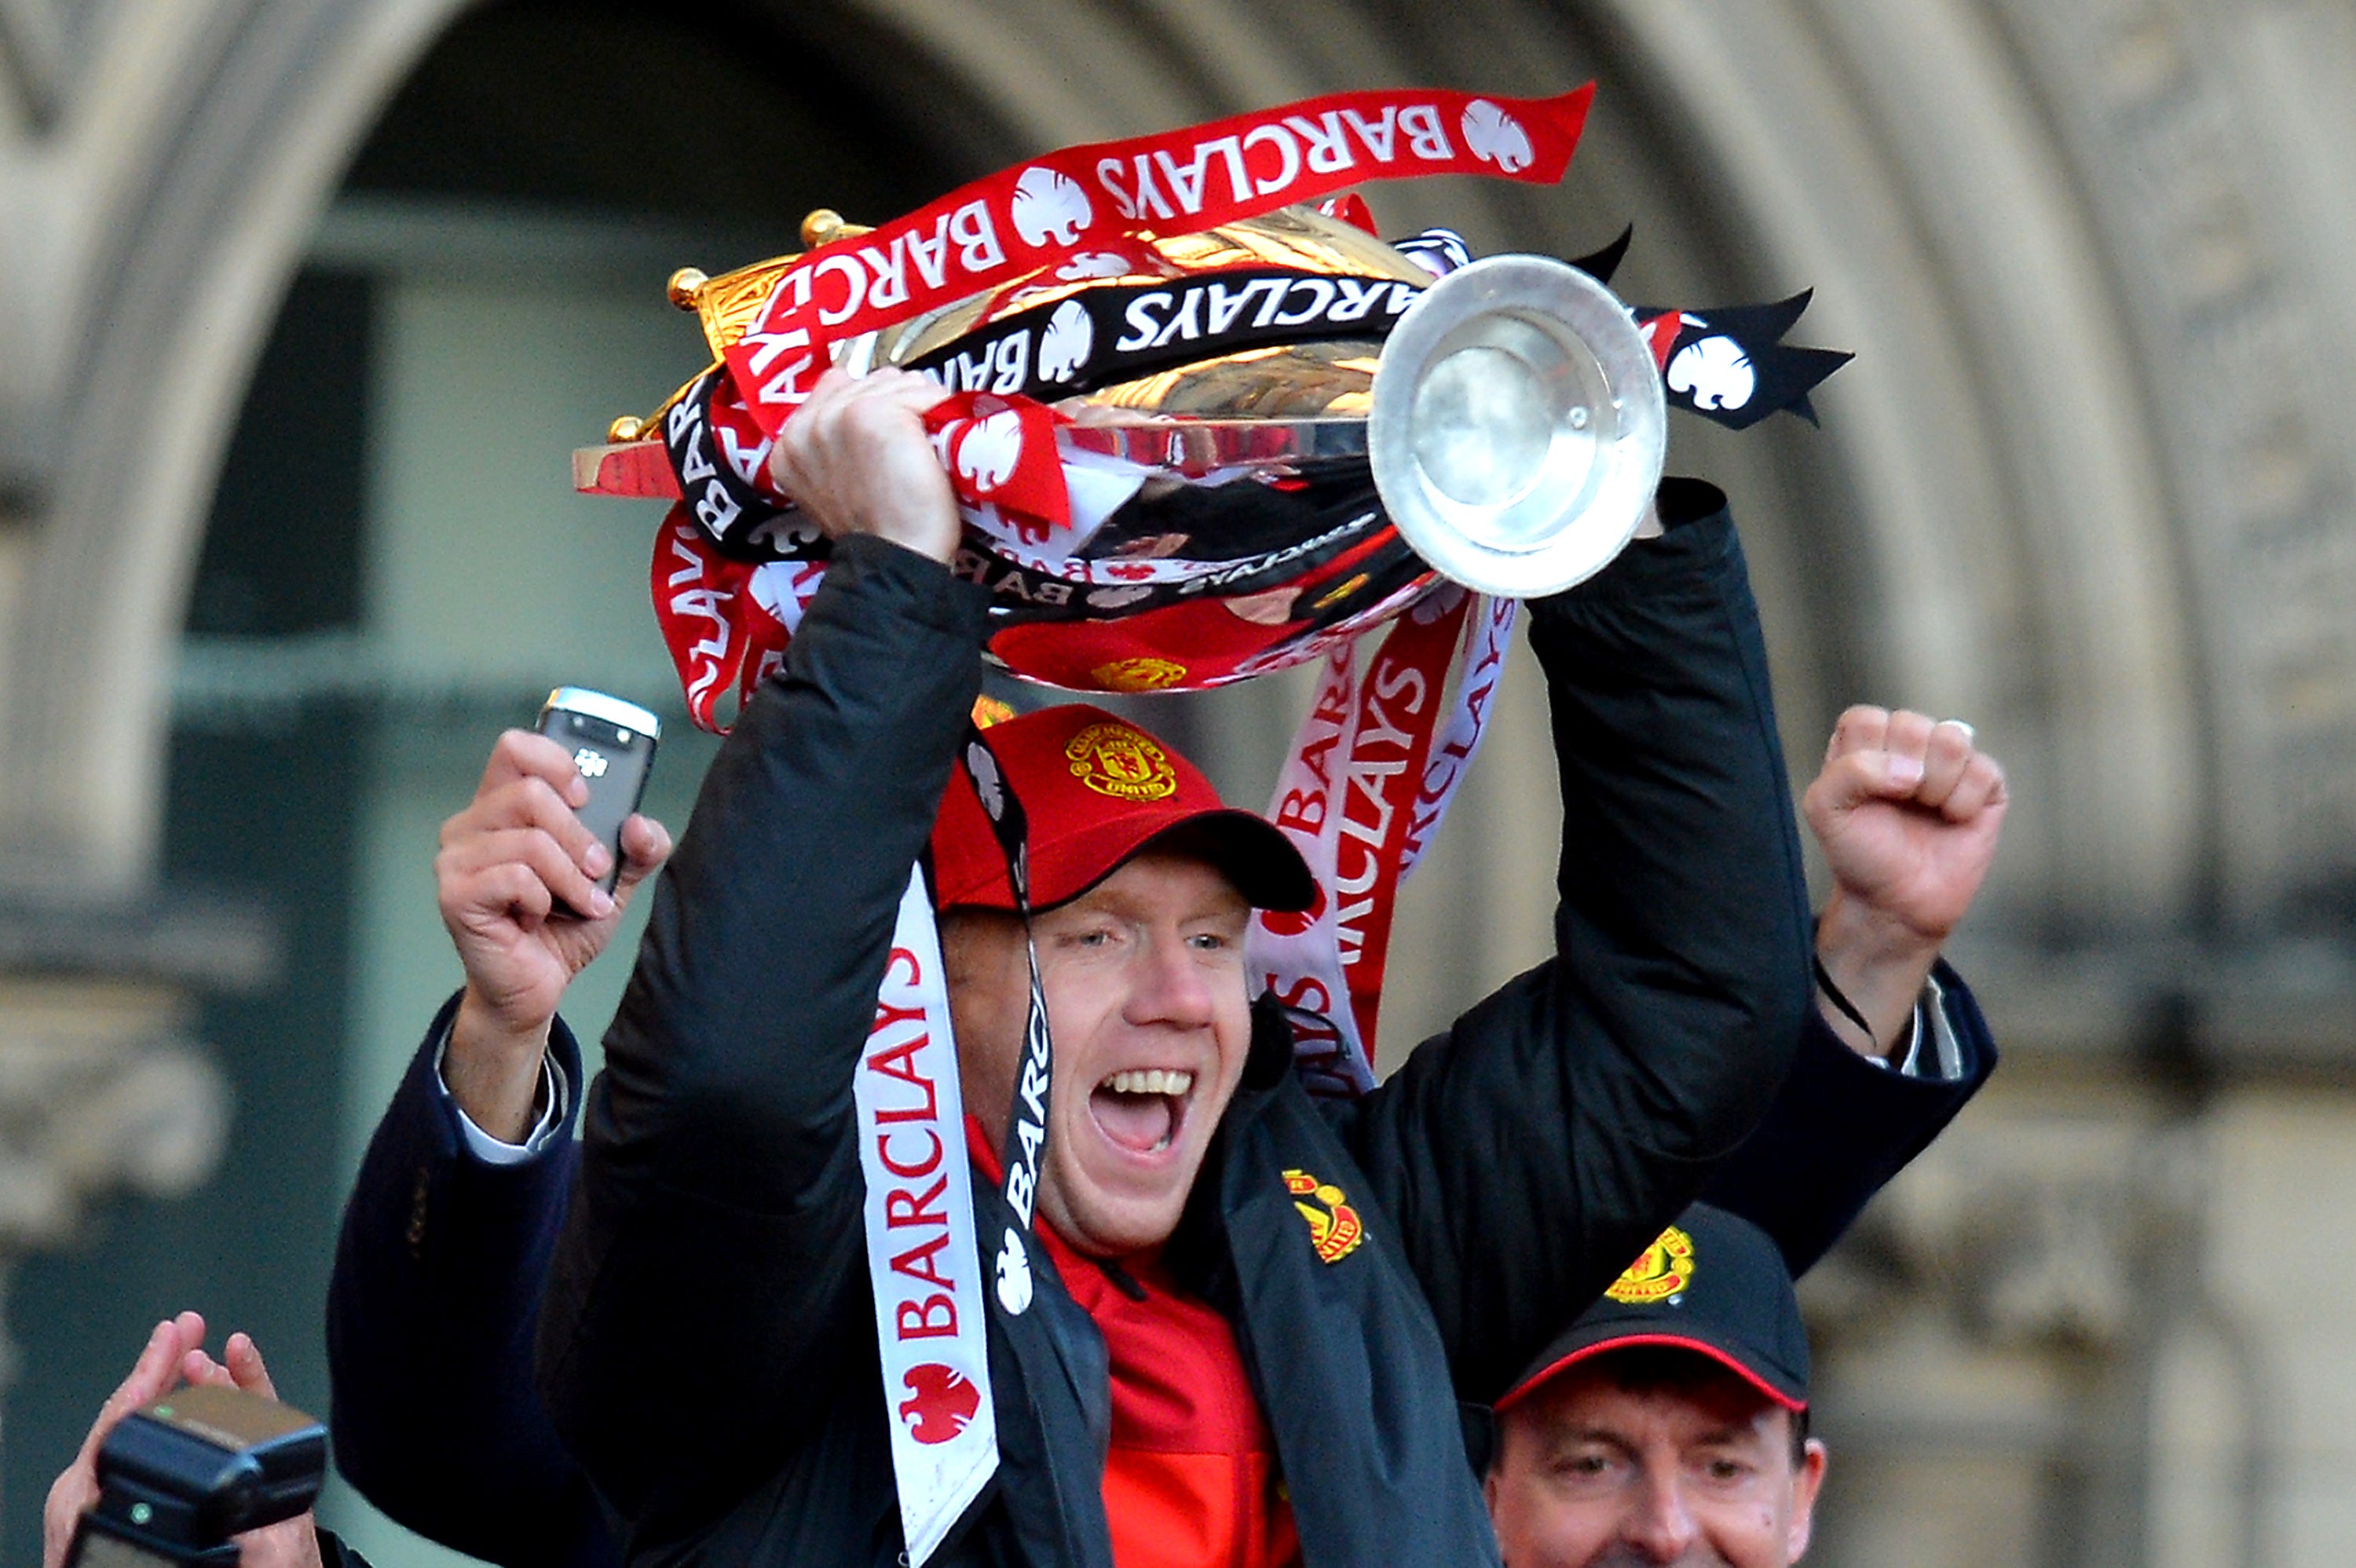 Paul Scholes lifts his final Premier League title at Manchester United